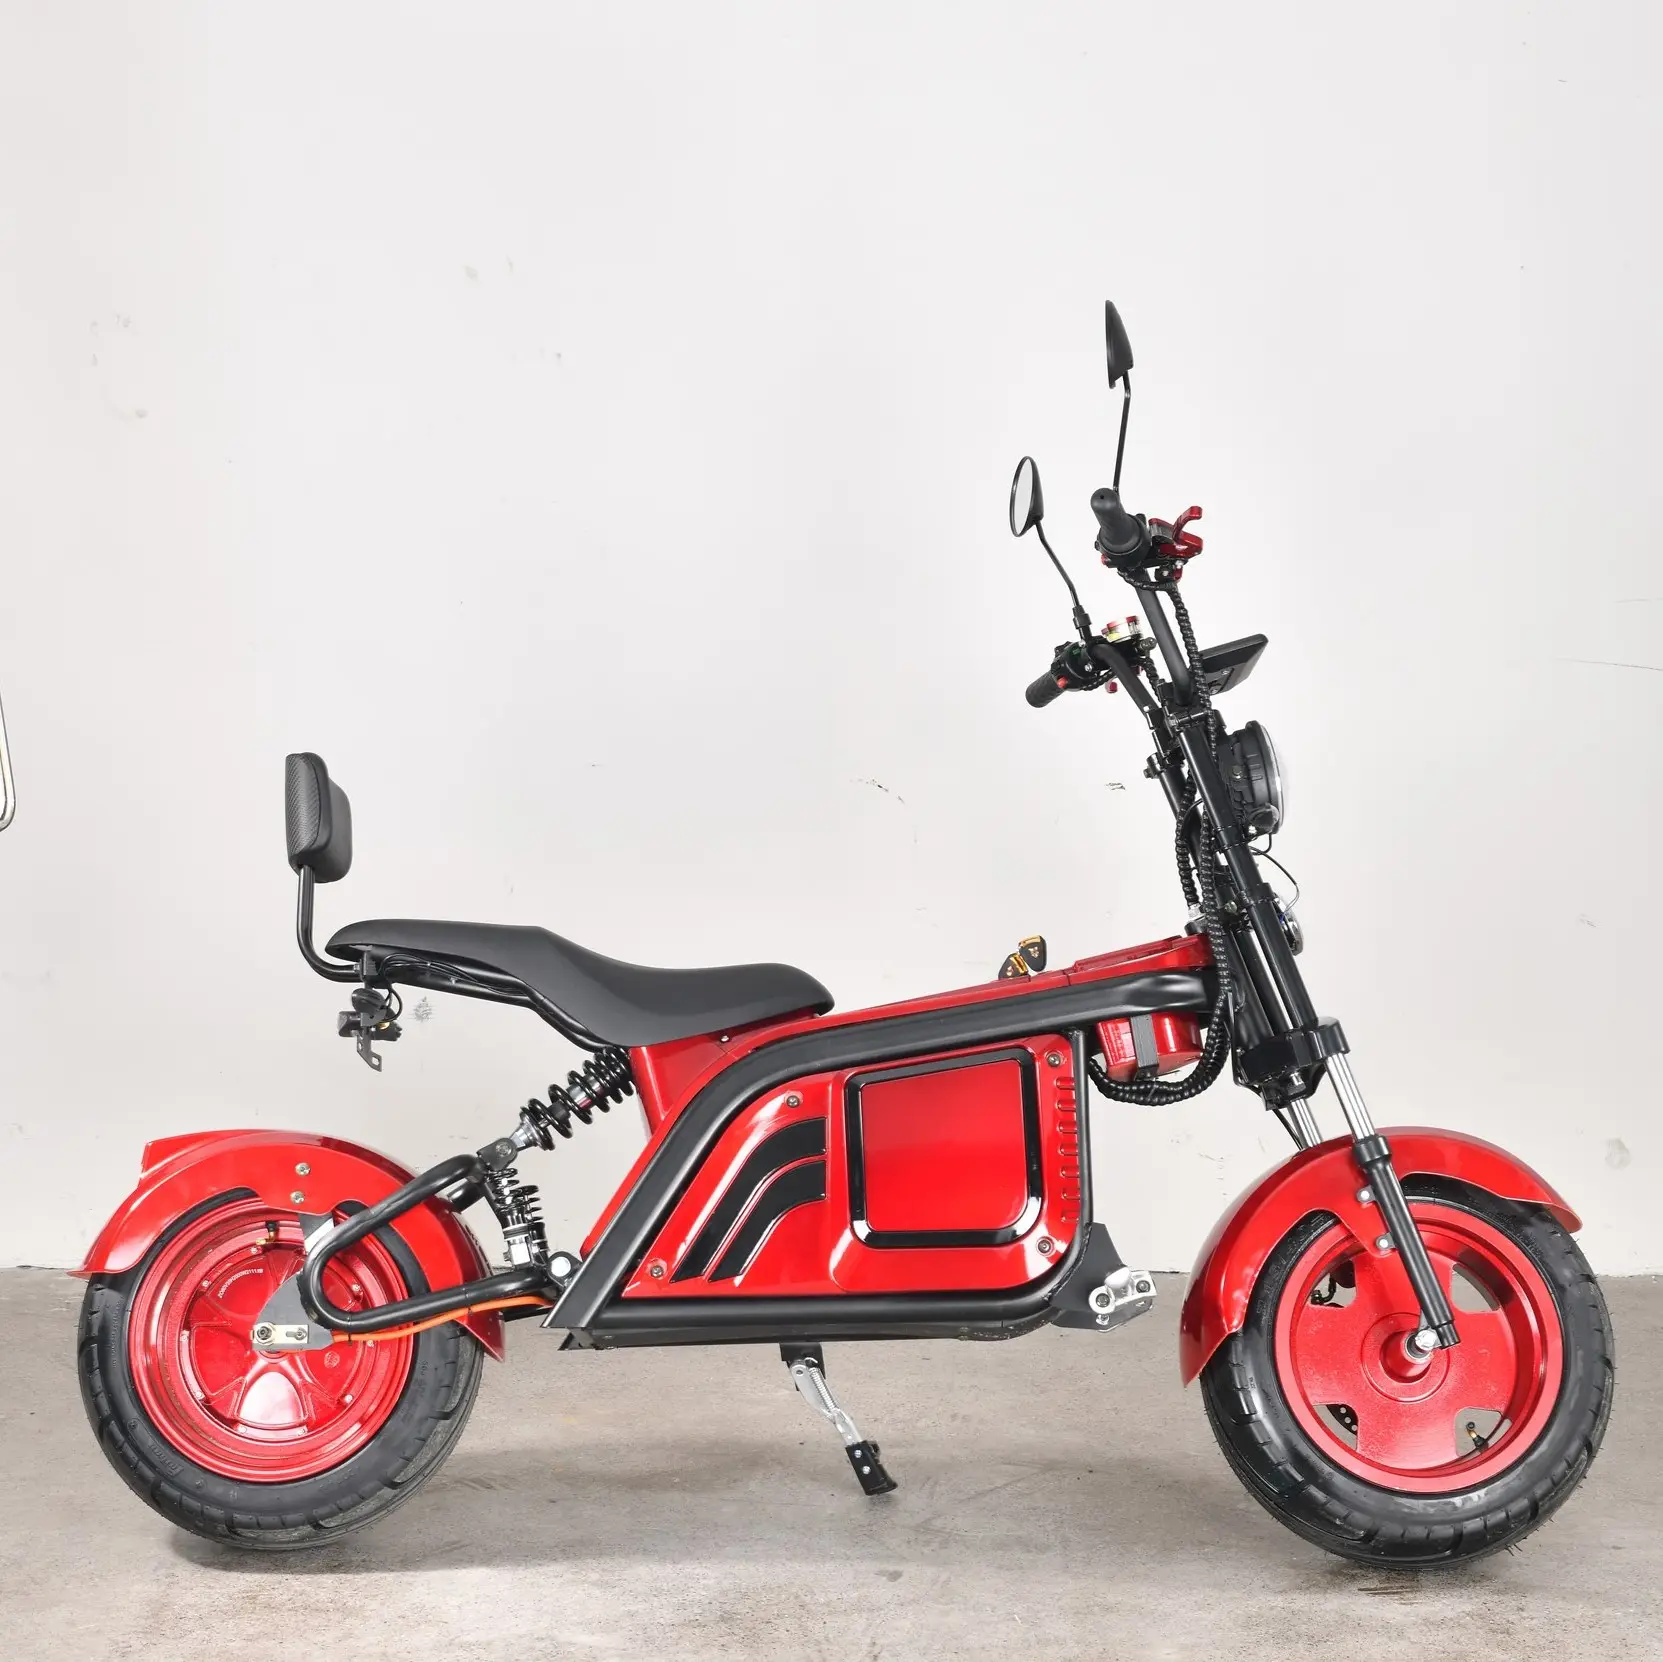 Miglior prezzo adulto Trike/triciclo elettrico moto grasso pneumatico Scooter in vendita